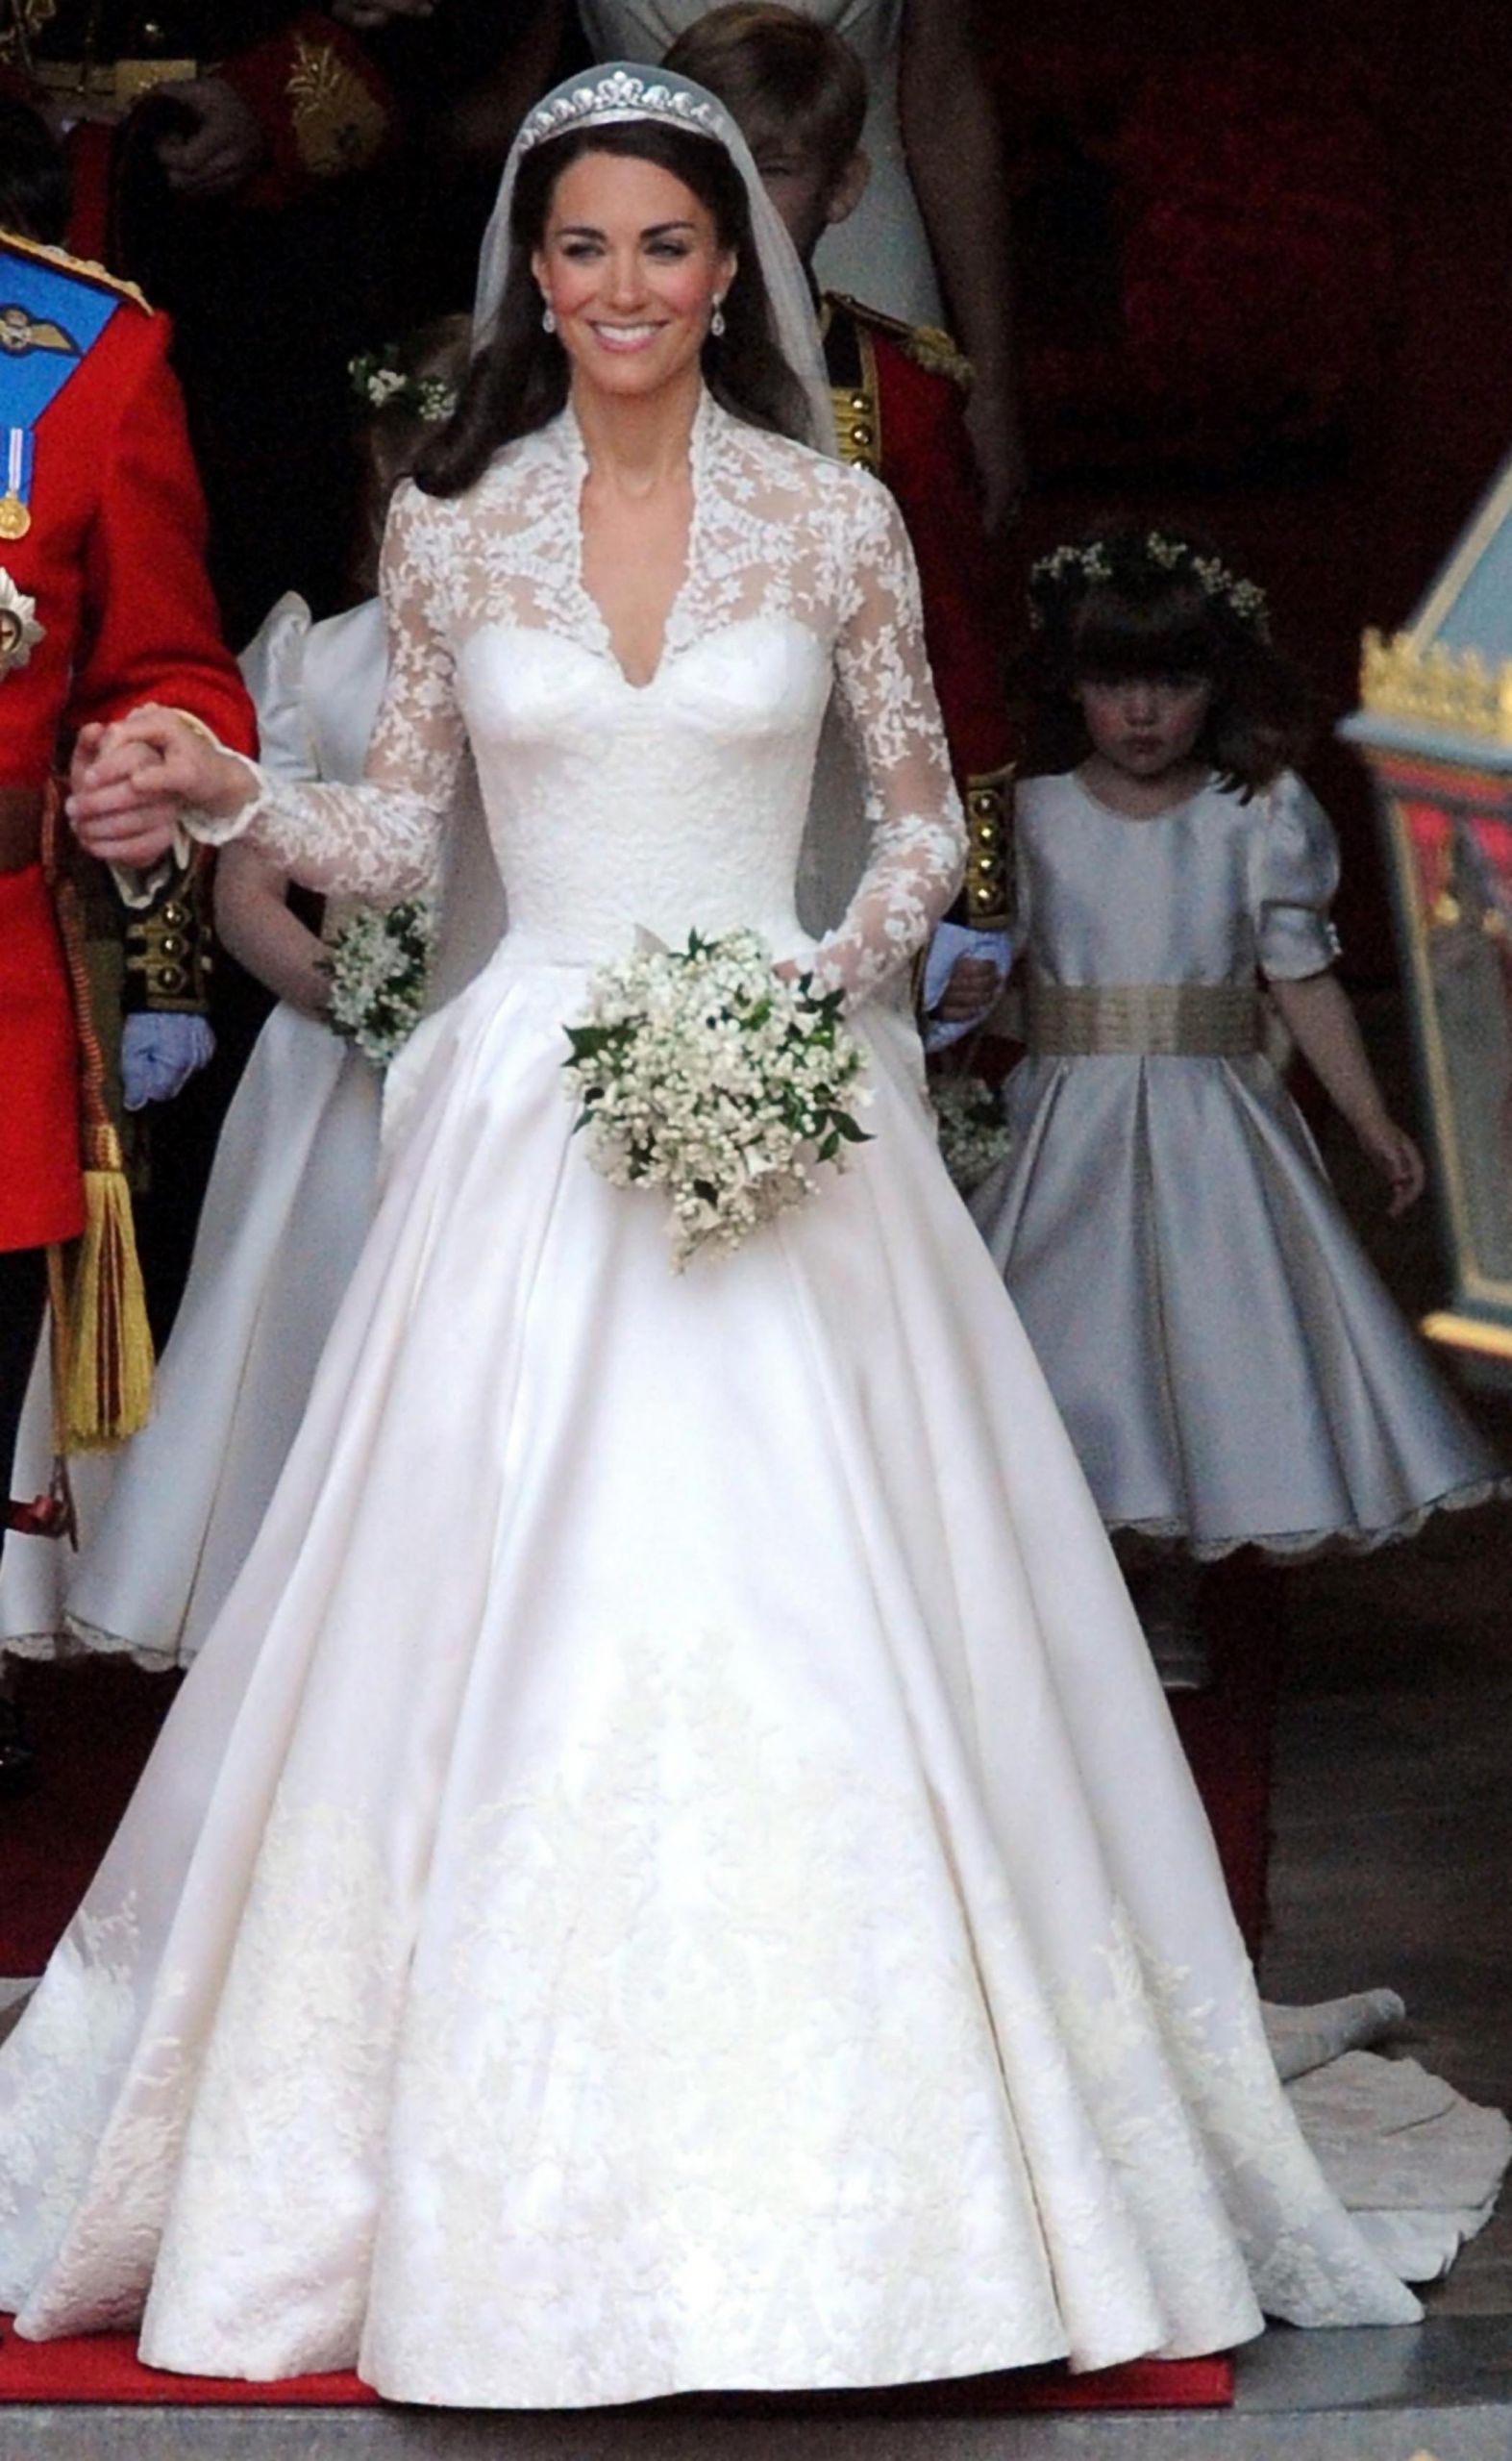 Kate Middleton Wedding Gown
 Kate Middleton’s wedding dress